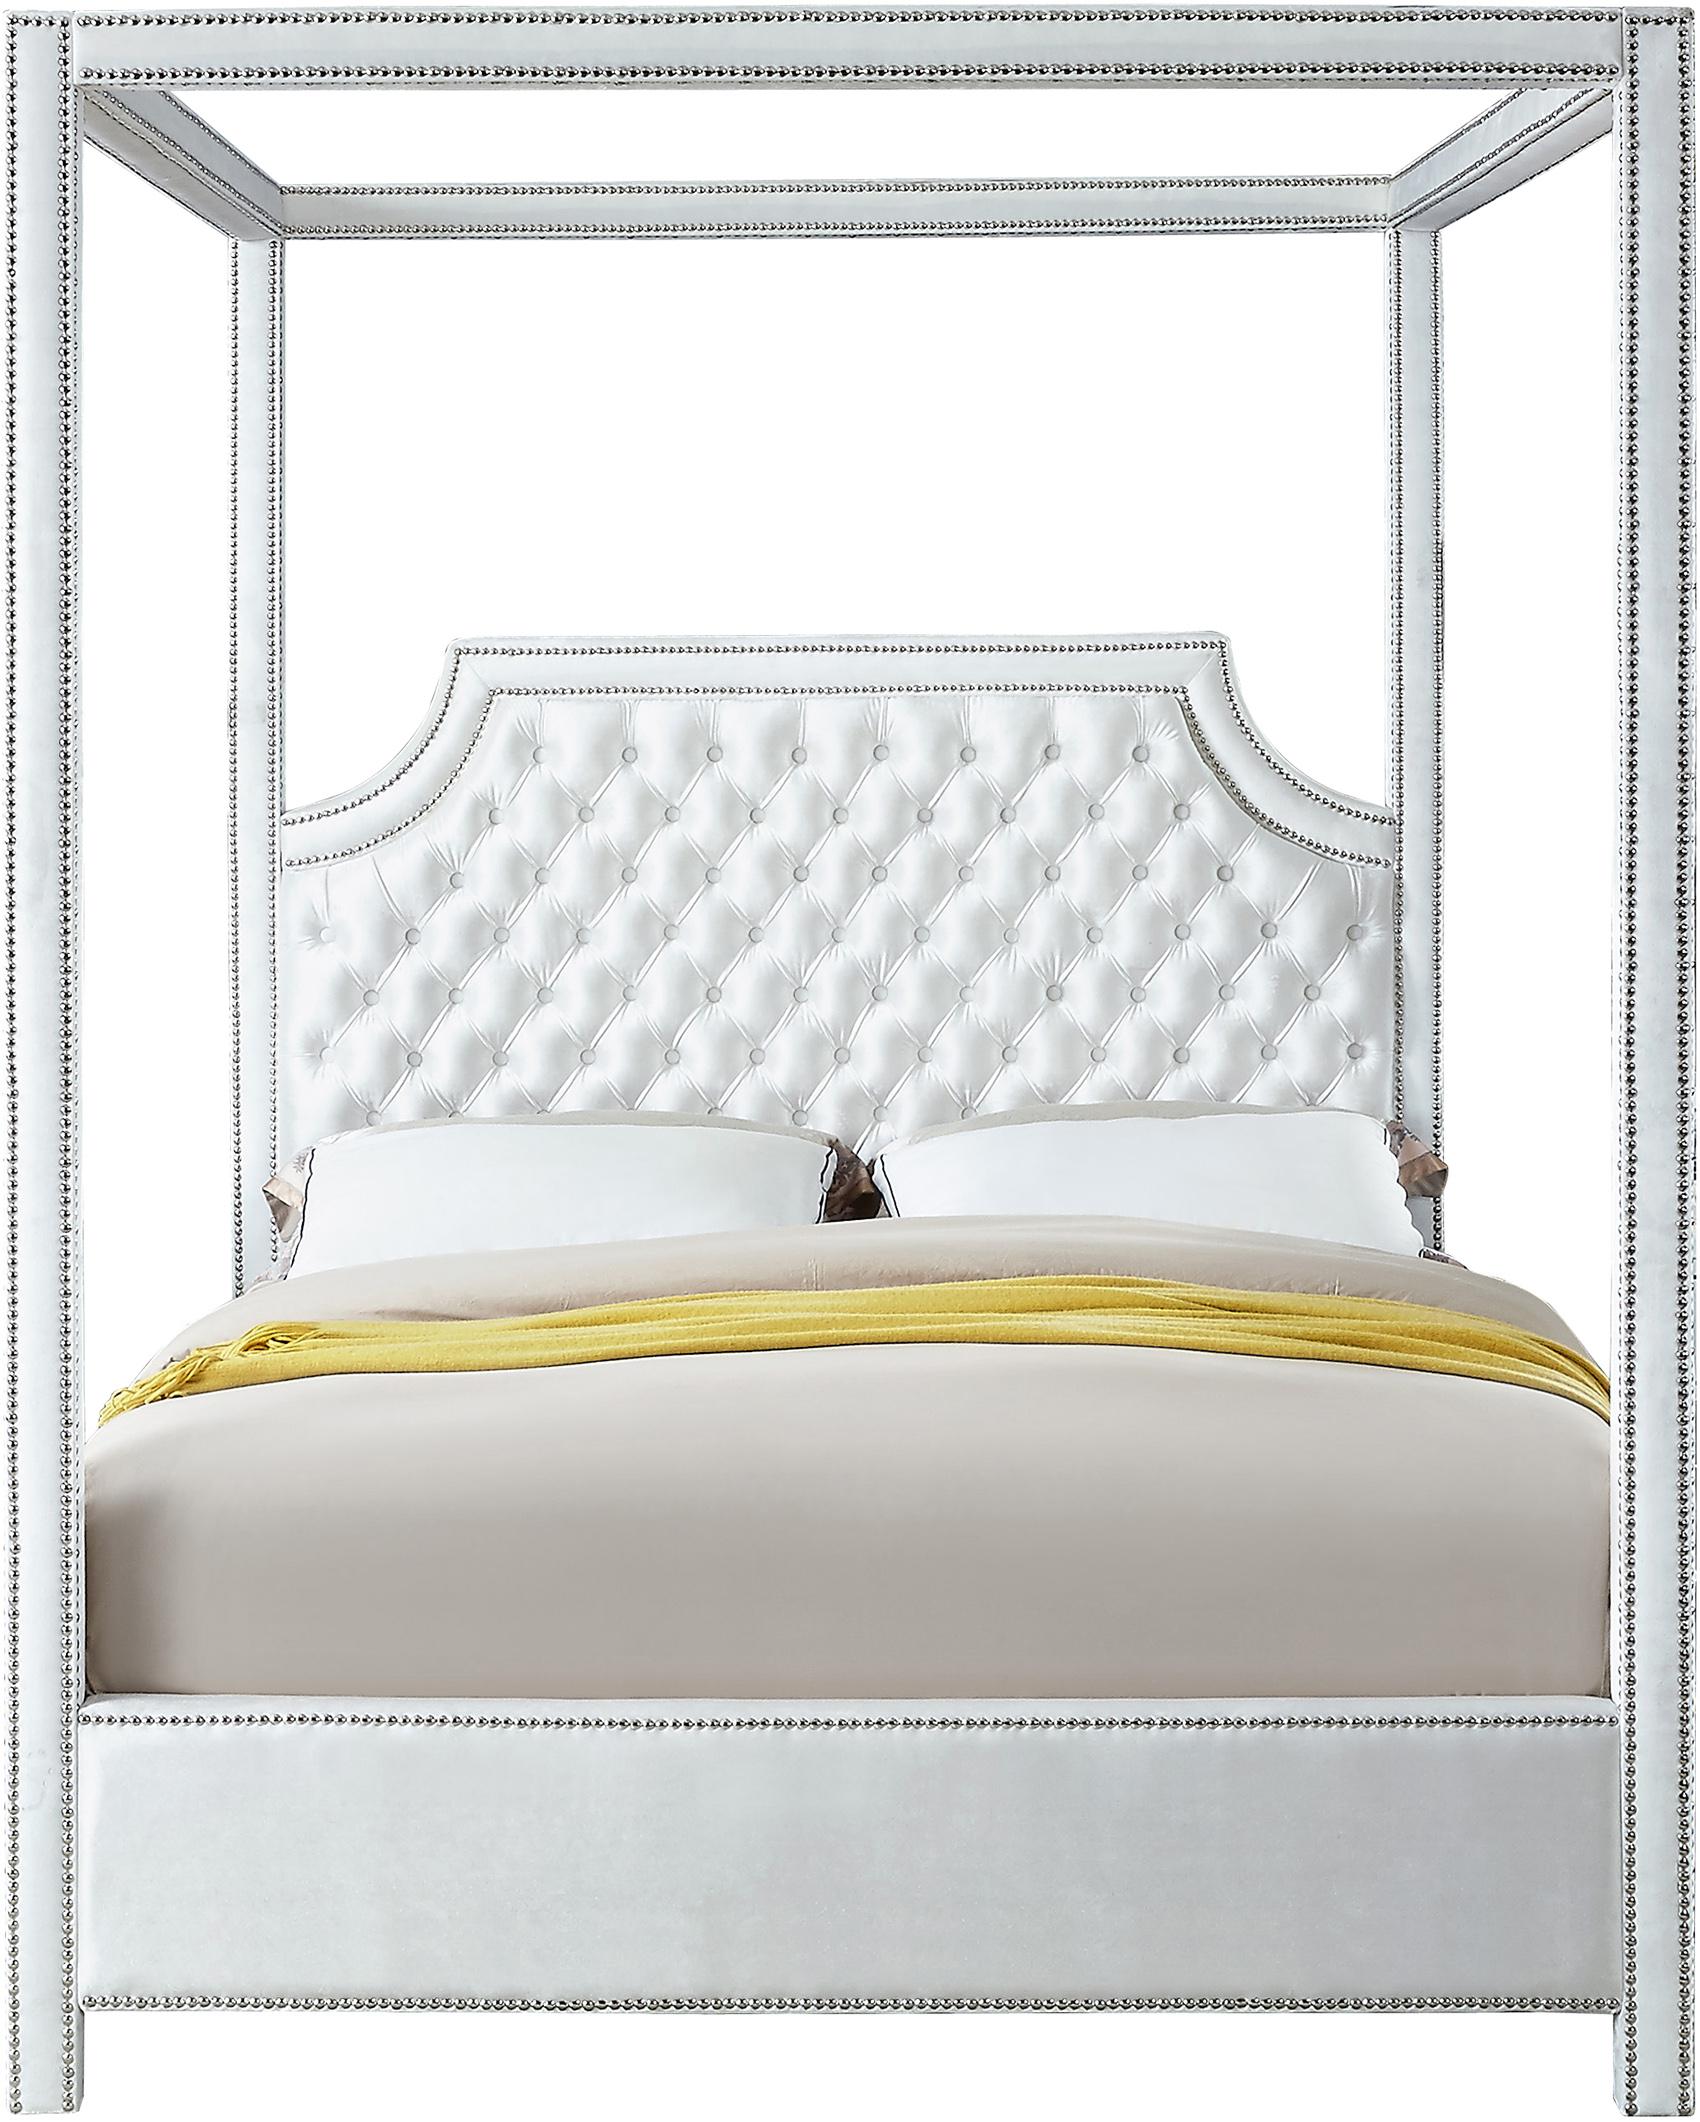 

    
Glam White Velvet Diamond Tufted Canopy King Bed Rowan Meridian Contemporary
